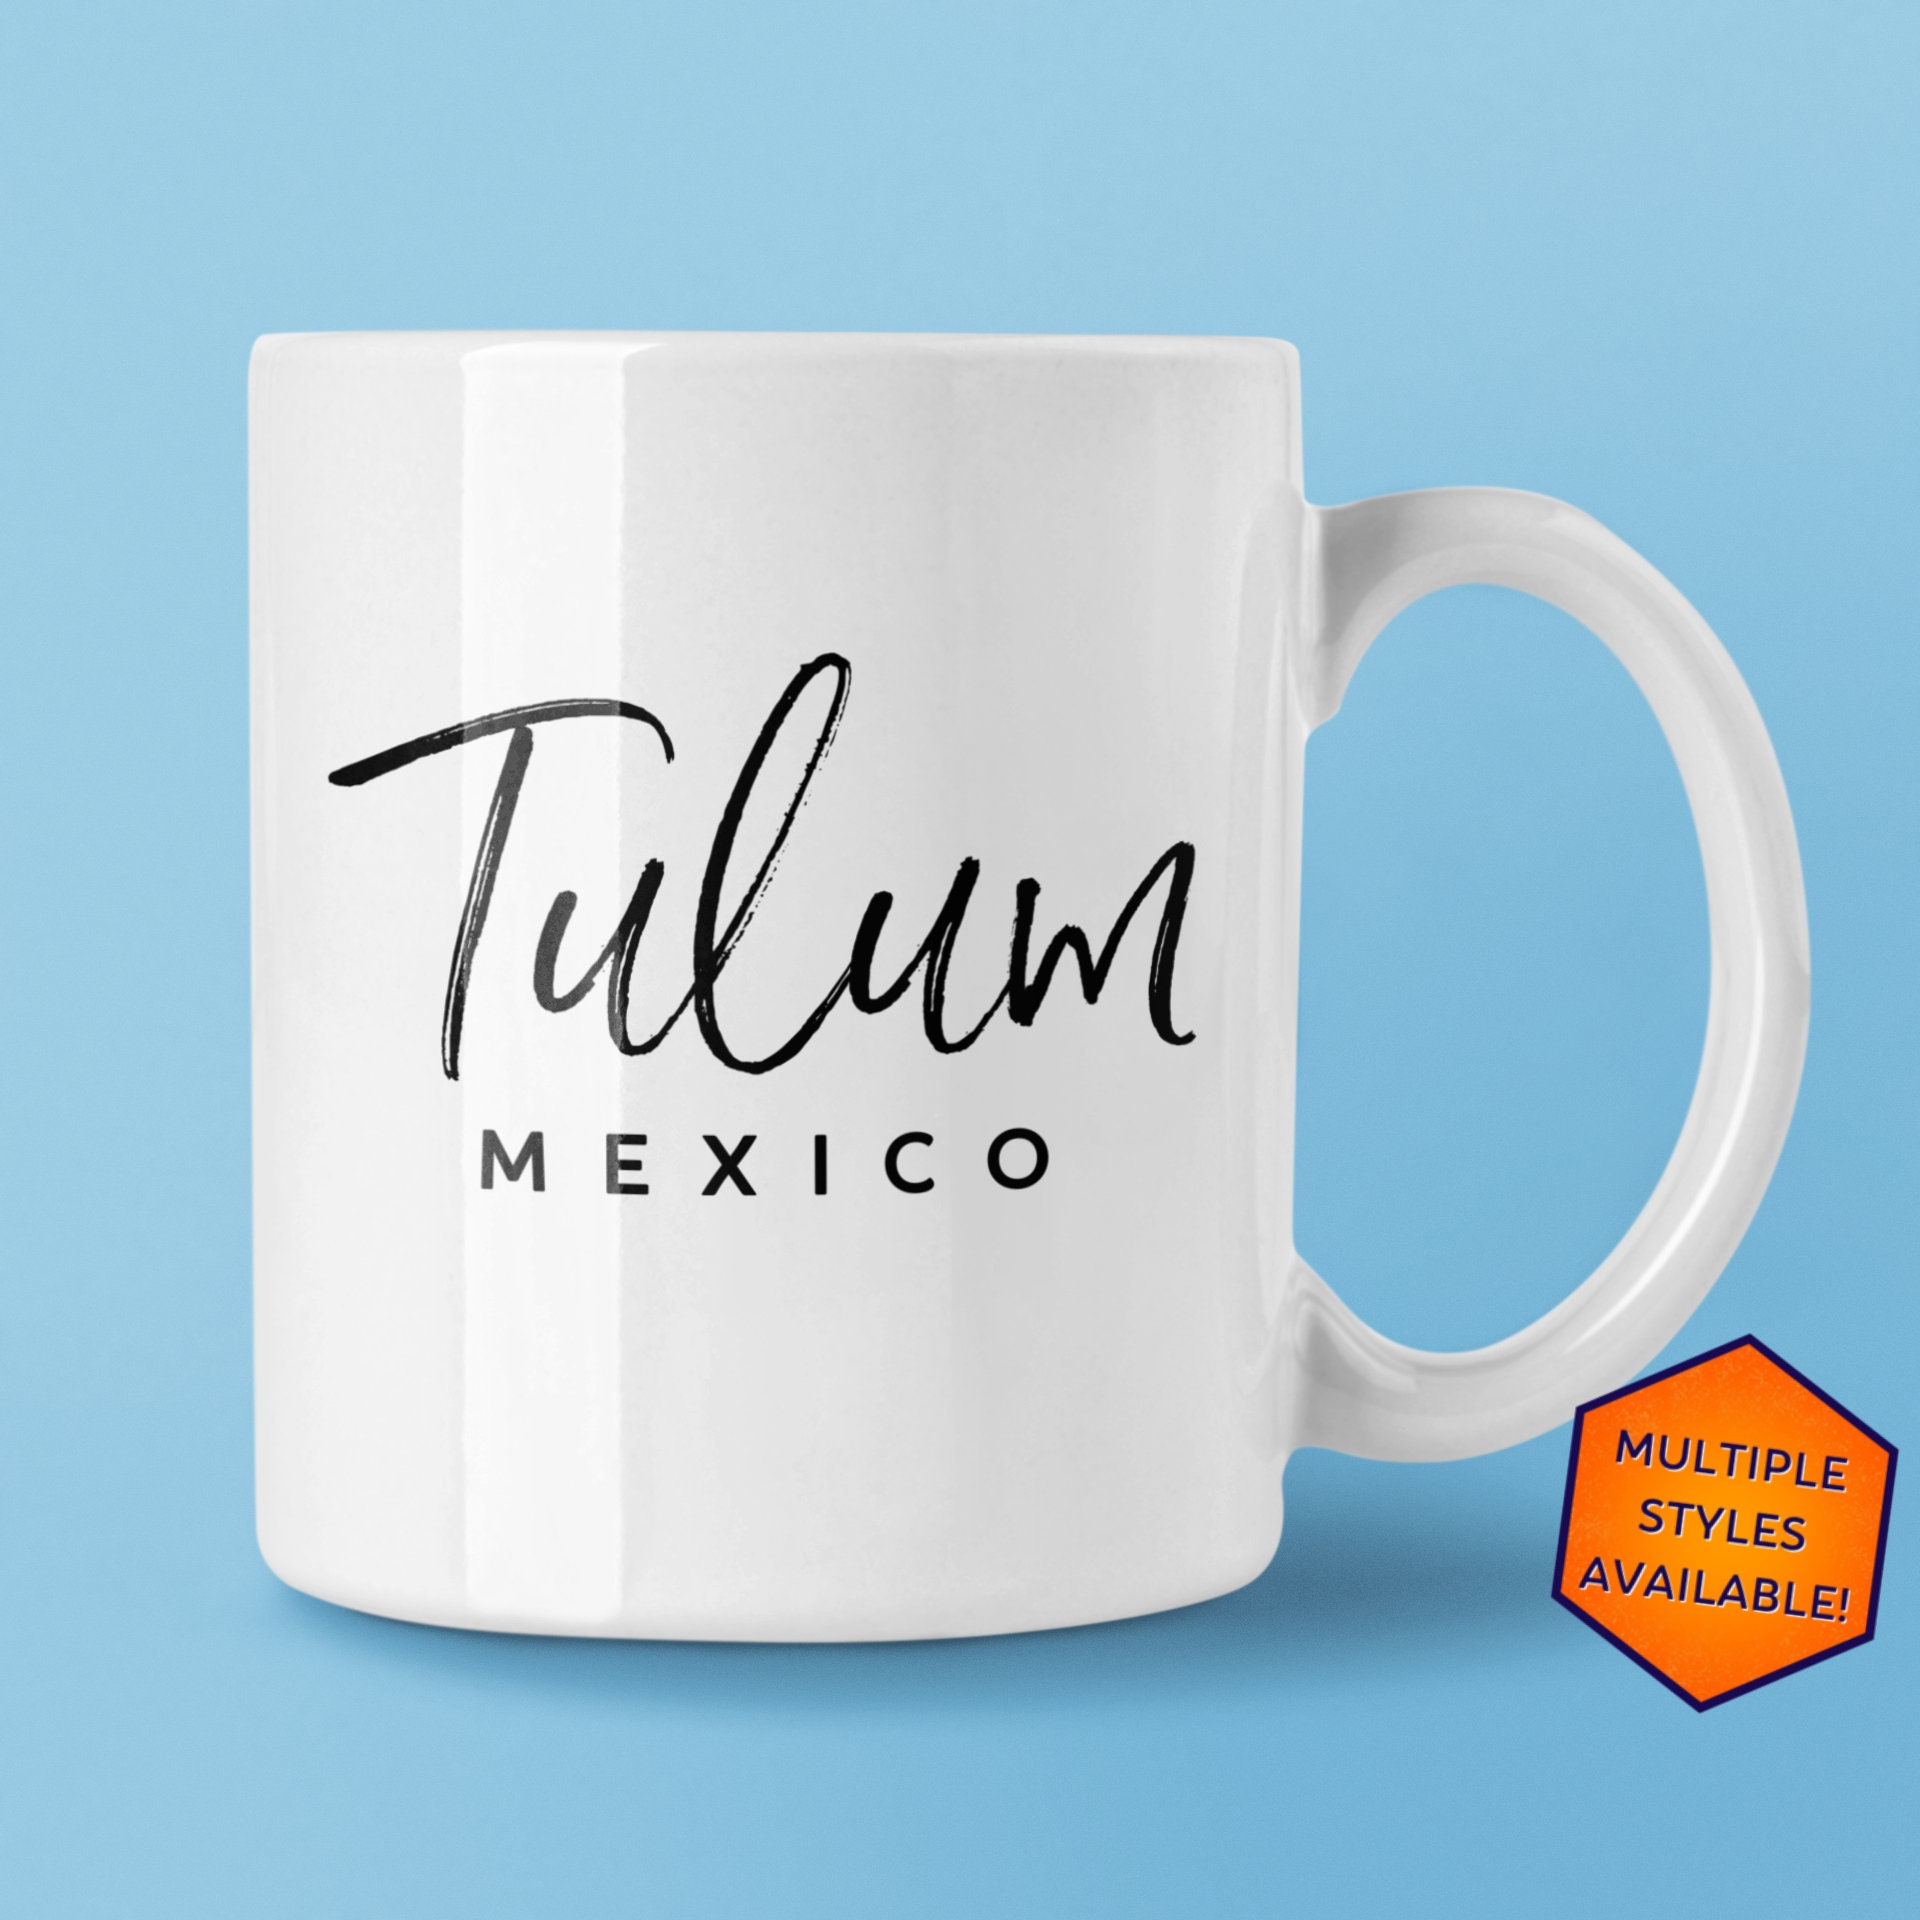 Tulum Coffee Cups, Unique Tulum Memorabilia, FREE SHIPPING, Tulum Mexico,  Great Tulum Gift, Cool Tulum Keepsake, Good Tulum Souvenir, Mexico 